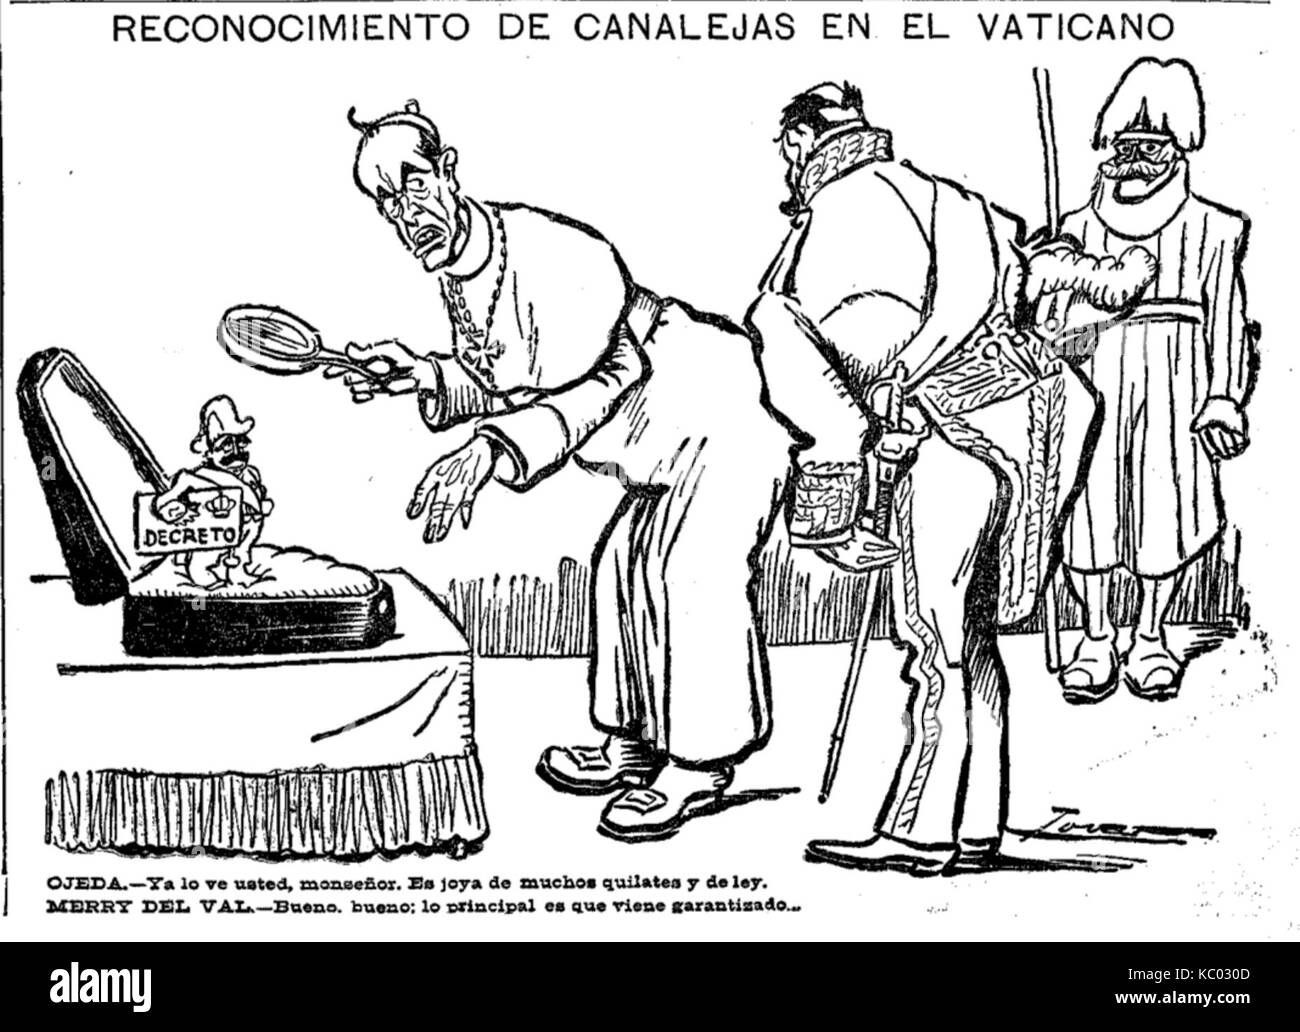 Reconocimiento de Canalejas en El Vaticano, de Tovar, El Liberal, 20 de abril de 1910 Stock Photo